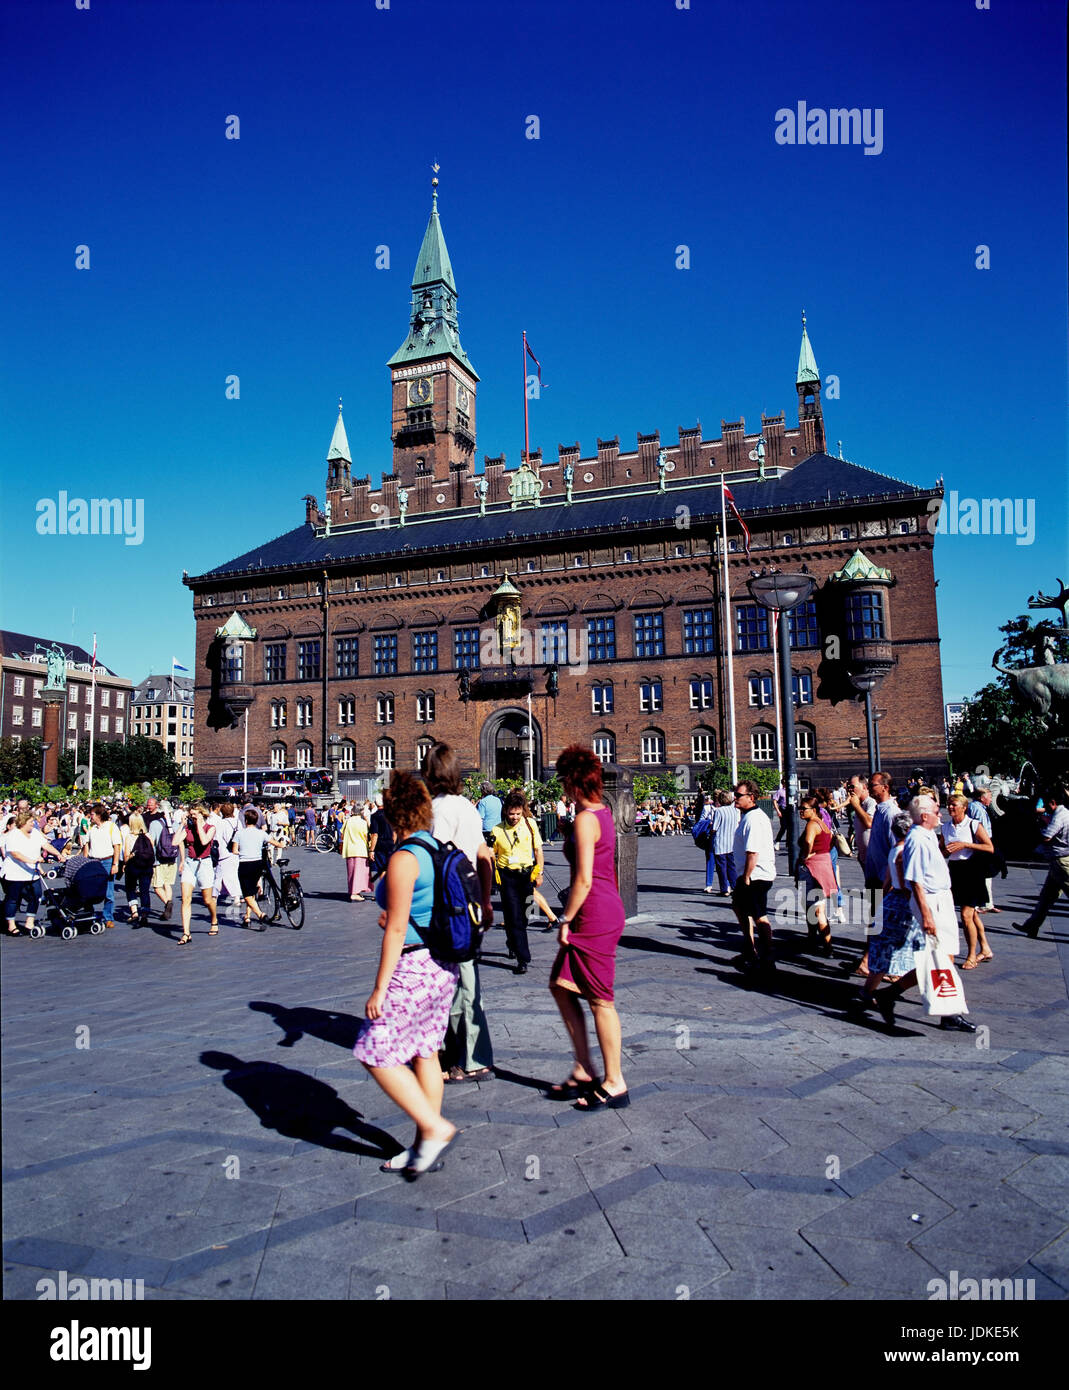 Danimarca, Copenaghen, alla piazza del municipio, municipio Daenemark, Kopenhagen, Rathausplatz Rathaus Foto Stock